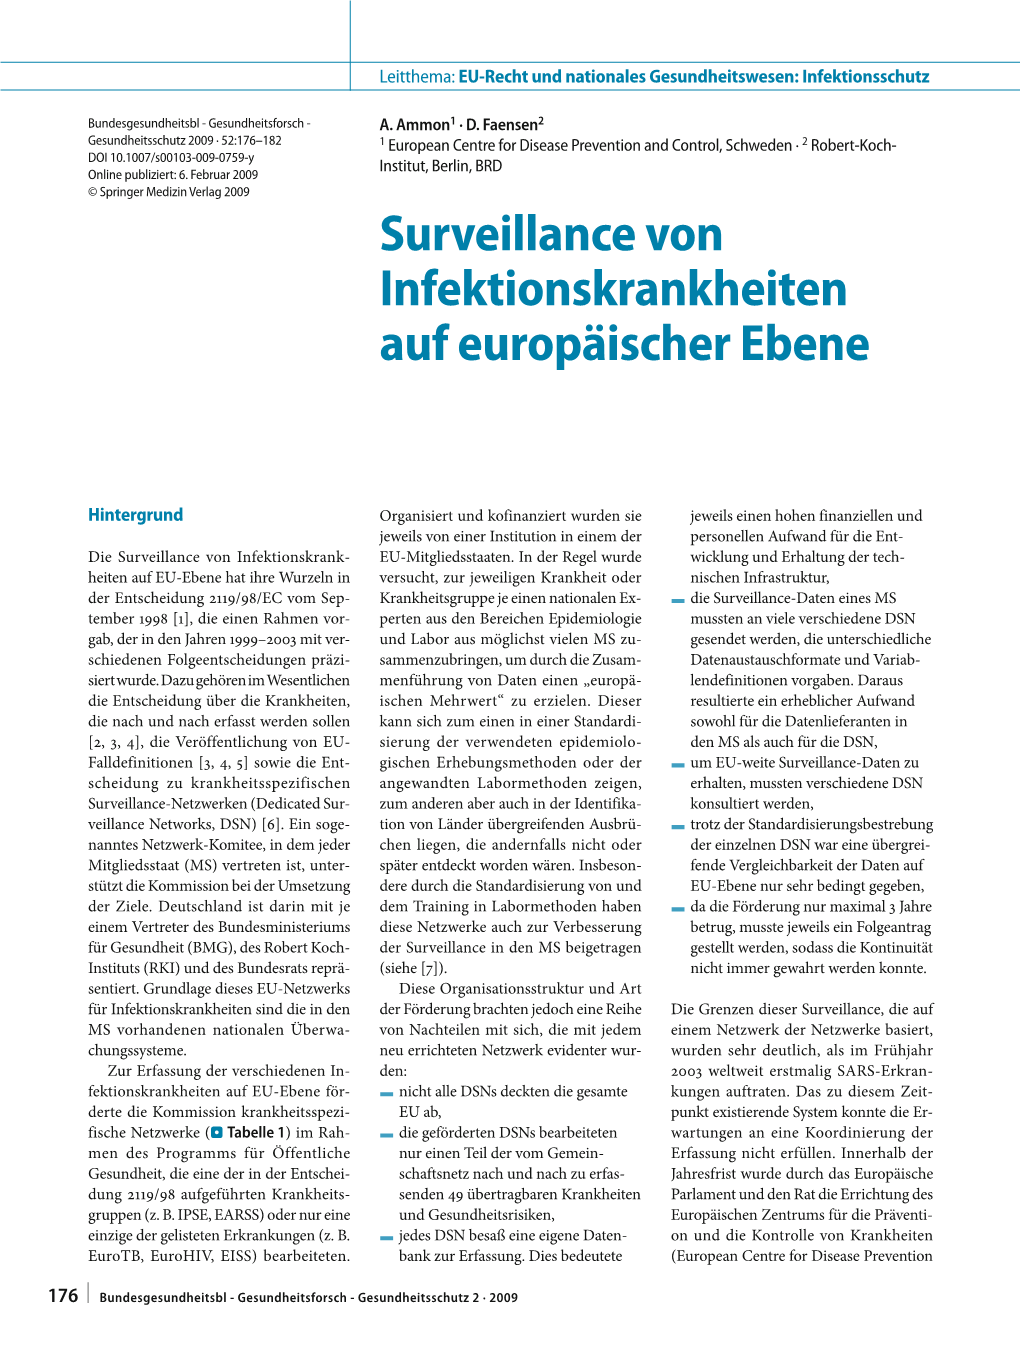 Surveillance Von Infektionskrankheiten Auf Europäischer Ebene